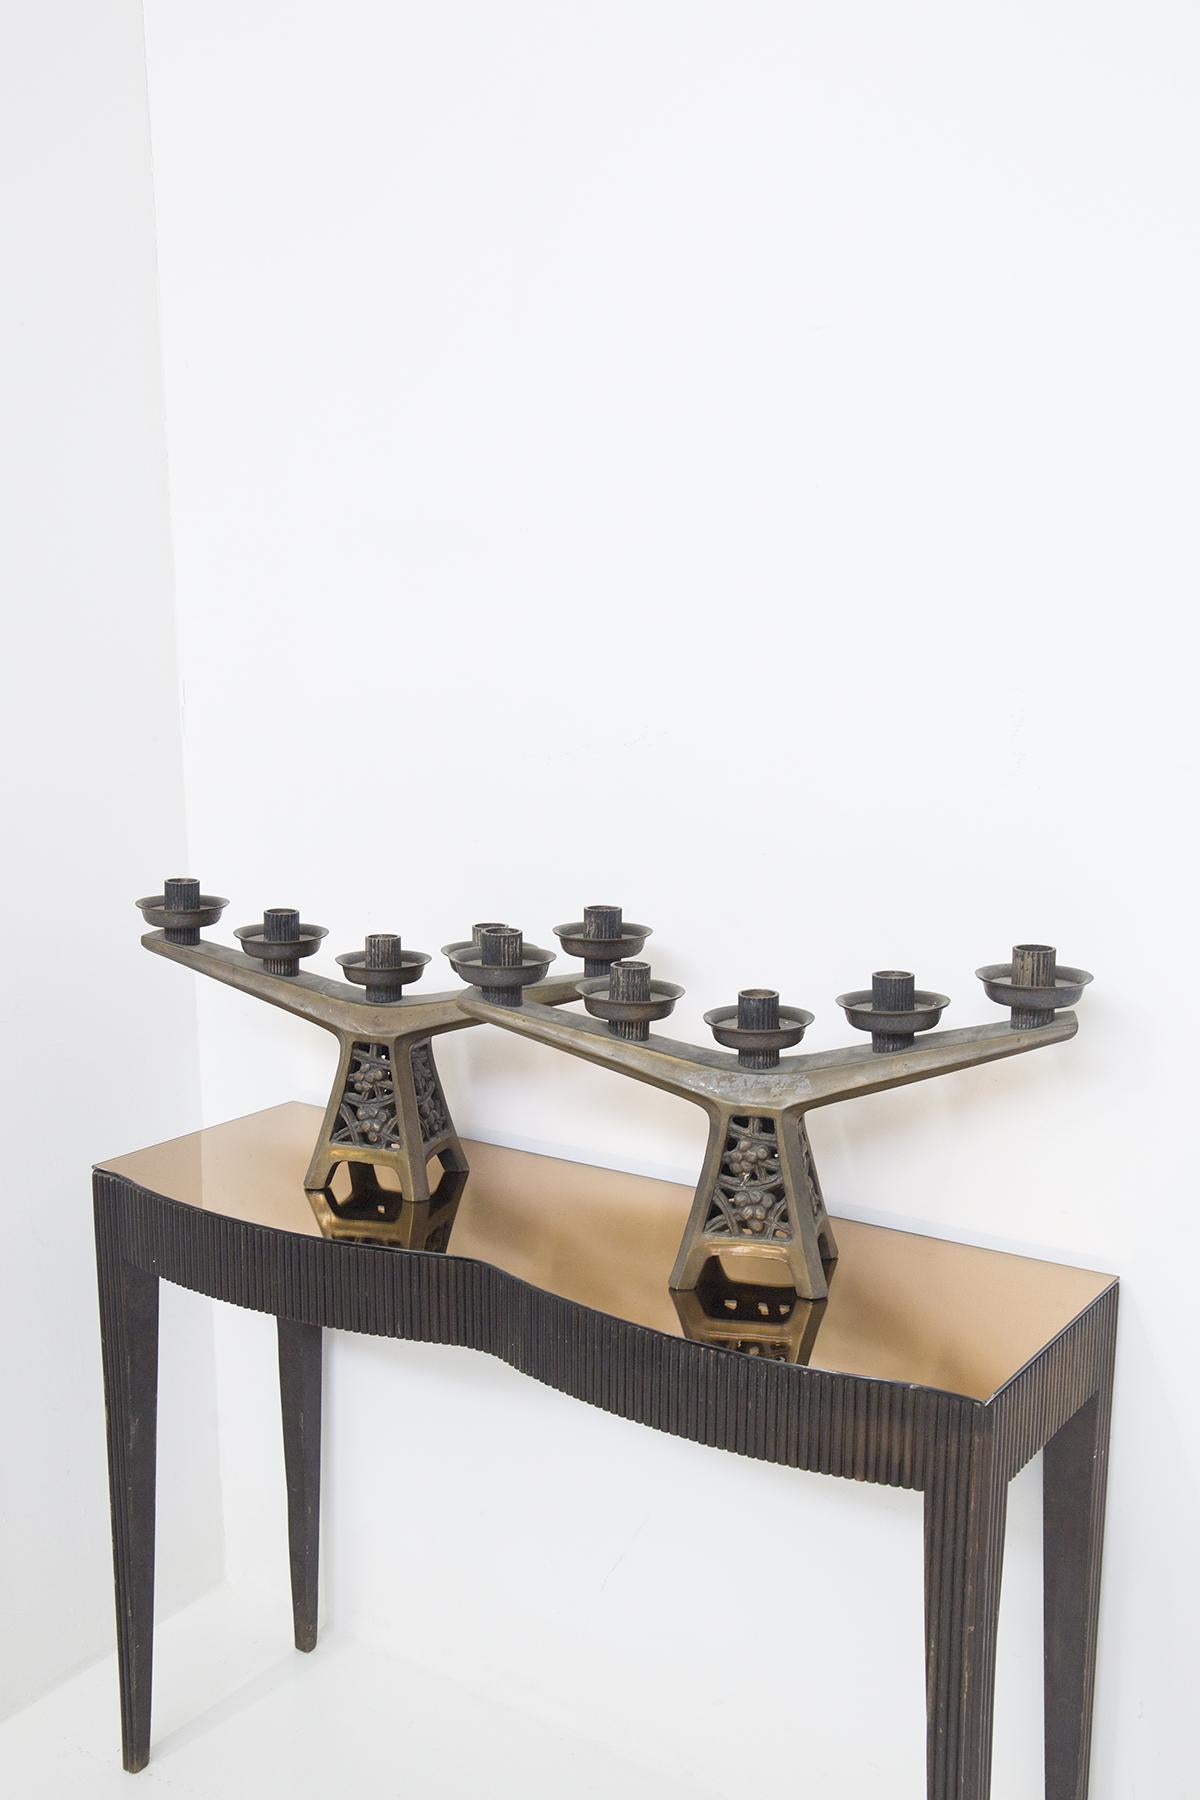 Schönes Paar Kandelaber aus den frühen 1900er Jahren, französische Herstellung.
Sie sind ganz aus Bronze gefertigt und haben einen Turmsockel mit vier quadratischen Standbeinen. Der Sockel zeigt echte Blumendekorationen, sehr schön. Typisch für den